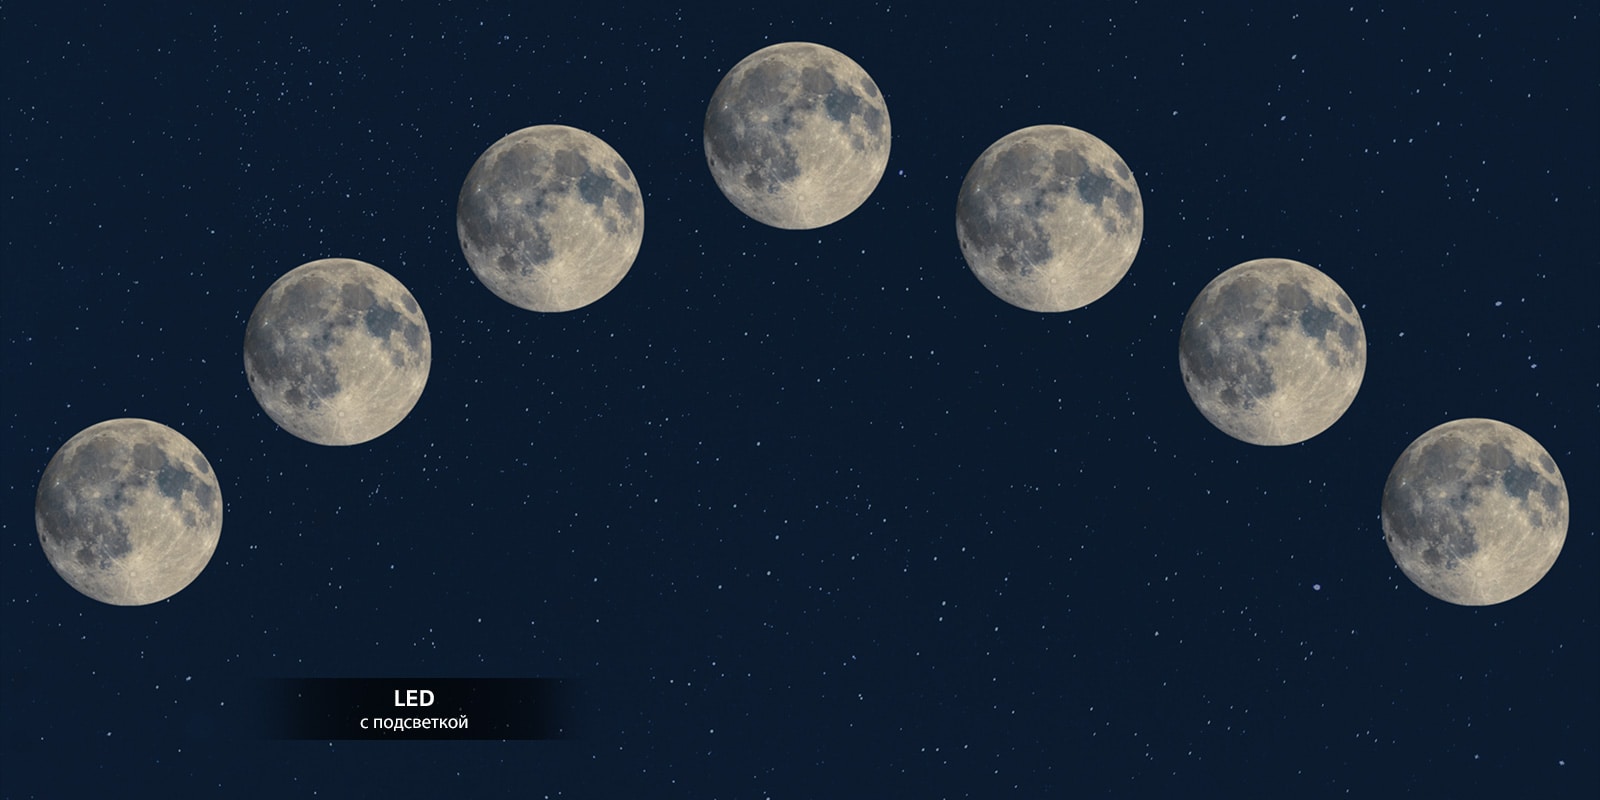 Изображение семи полных лун выровнено по ночному небу.